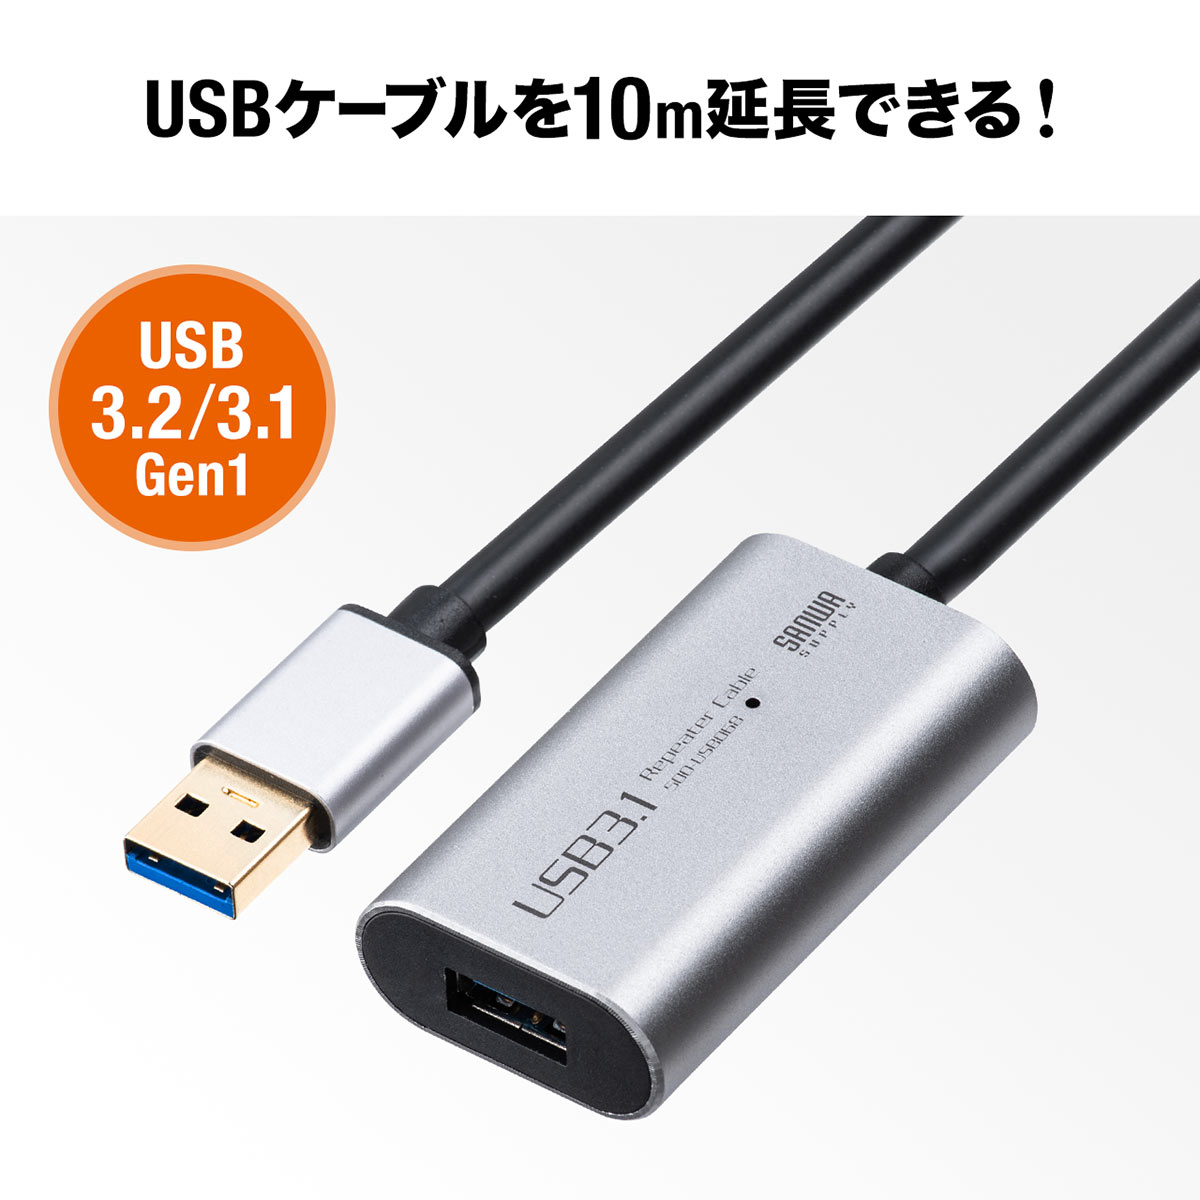 USB延長ケーブル 10m USB延長 USB3.0 USB 3.2 USB3.1 Gen1 アクティブタイプ テザー撮影 ACアダプタ付属 バスパワー セルフパワー